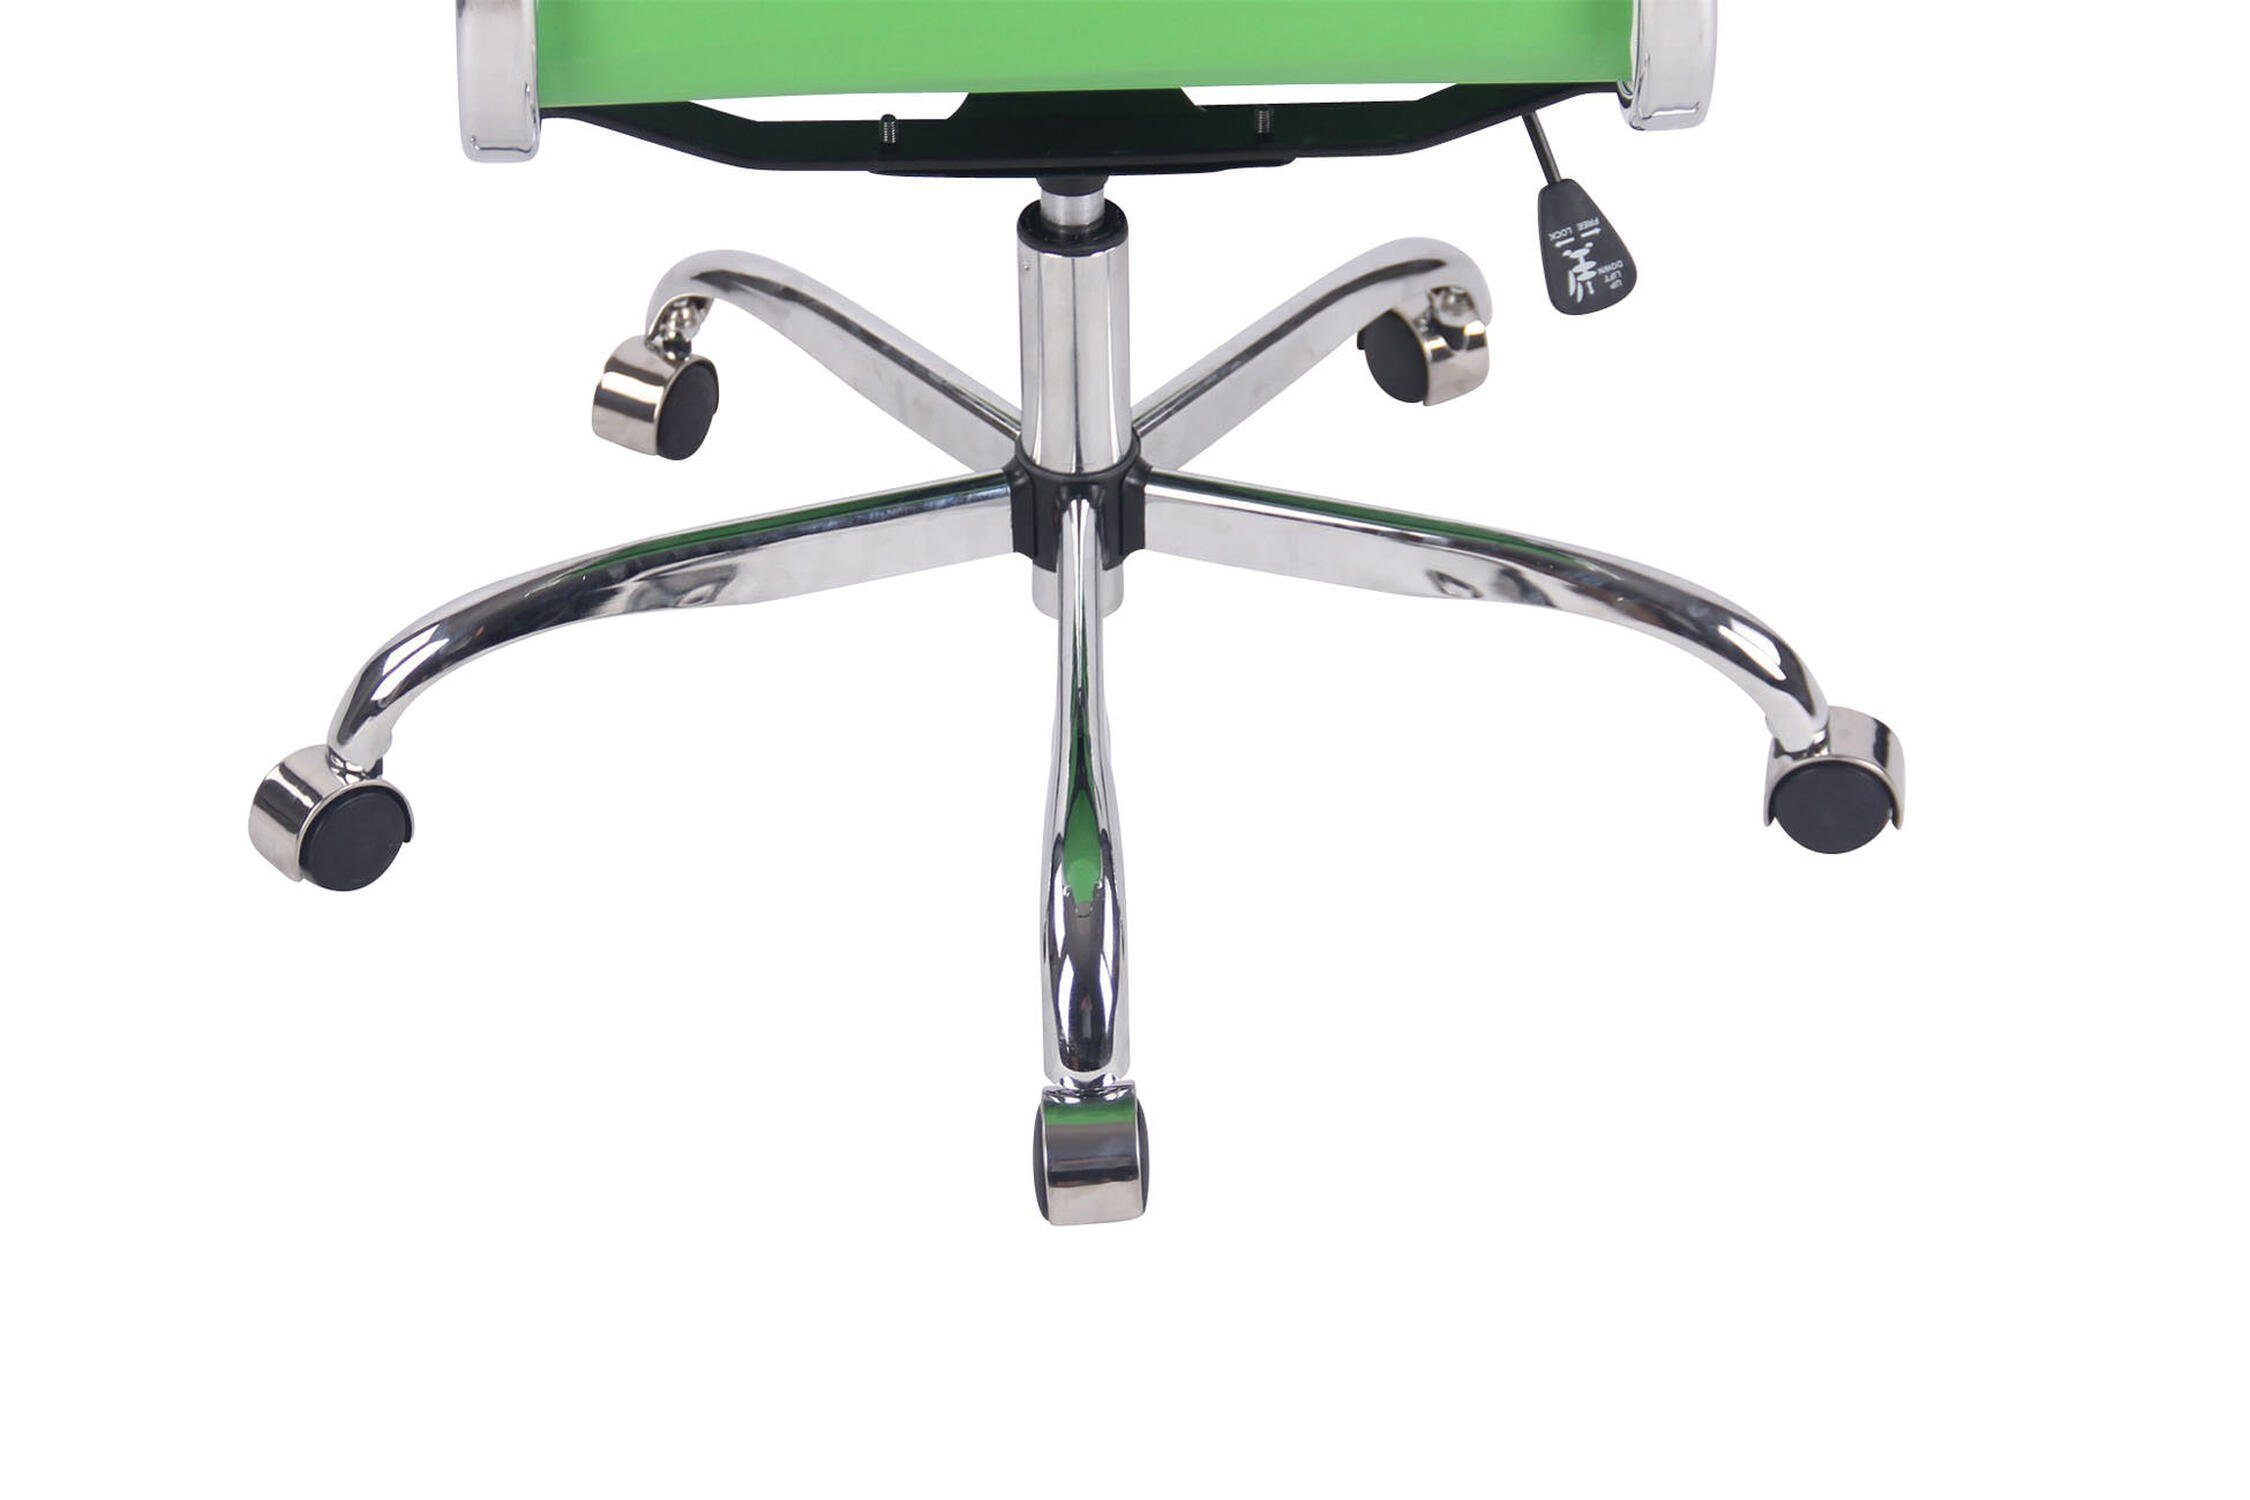 XXL), Sitzfläche: geformter Rückenlehne grün ergonomisch Bürostuhl mit bequemer Gestell: Drehstuhl, Metall Bürostuhl Beta Kunstleder Chefsessel, TPFLiving chrom - (Schreibtischstuhl,